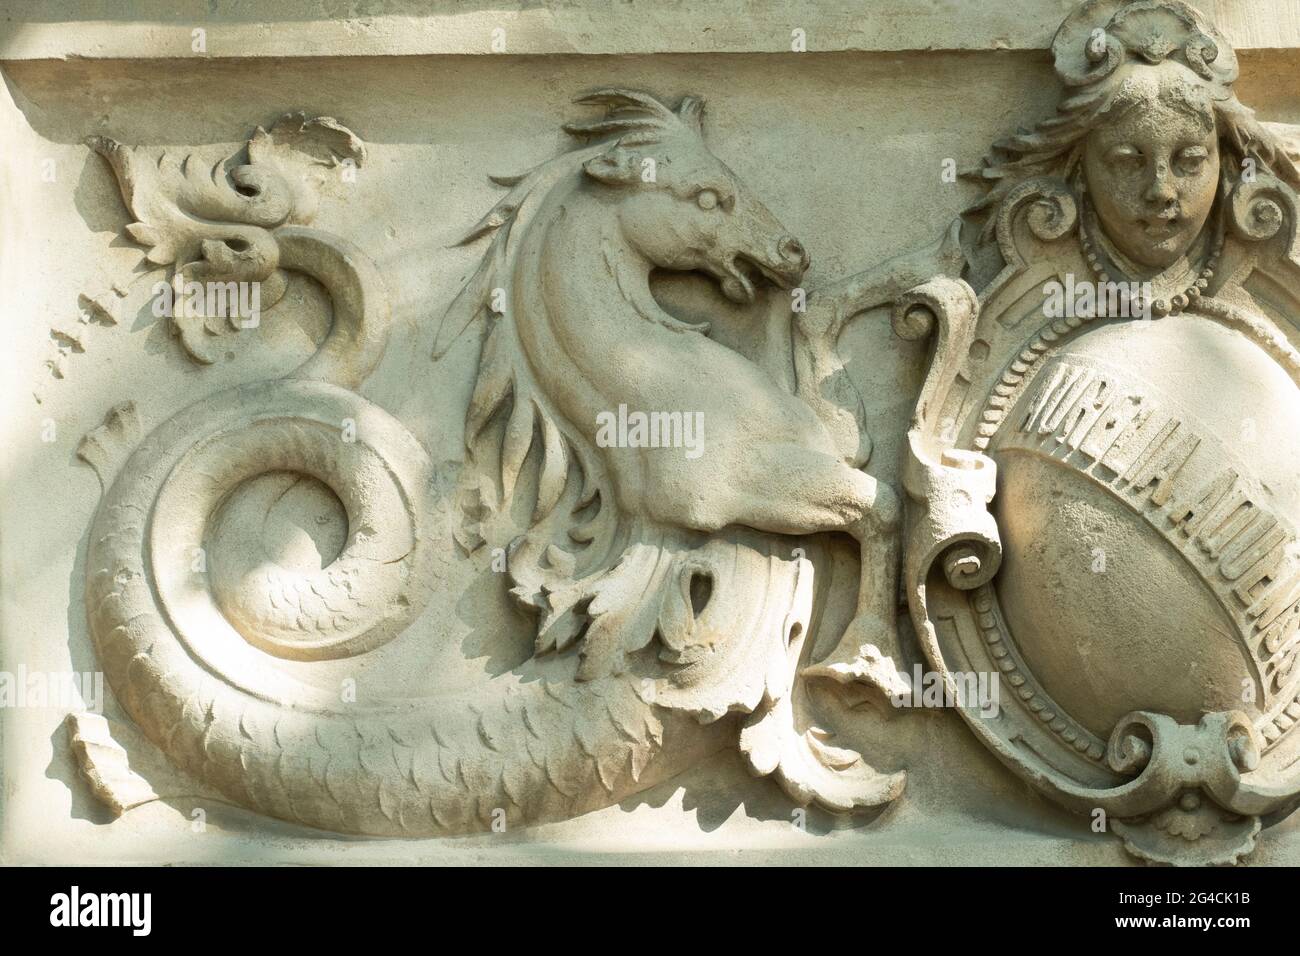 Kelpie relief am historischen, städtischen Wasserwerk von Baden-Baden Banque D'Images